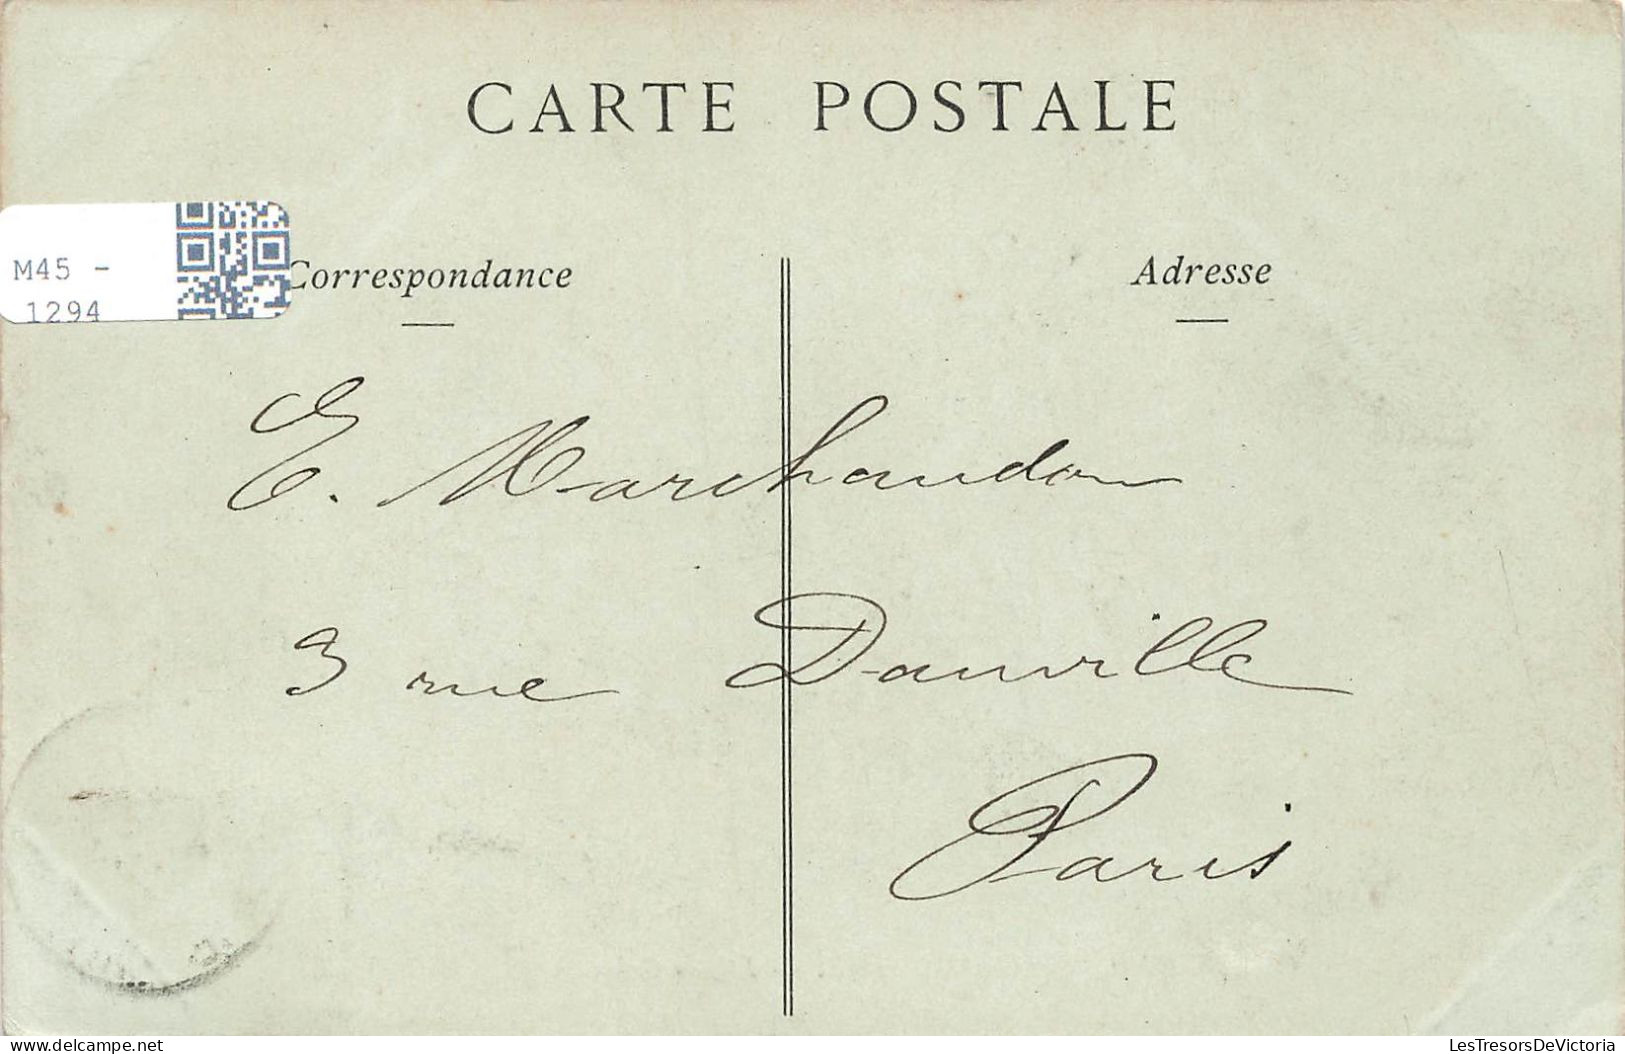 FRANCE - Chenonceaux - Château - Façades Orientale - Carte Postale Ancienne - Chenonceaux